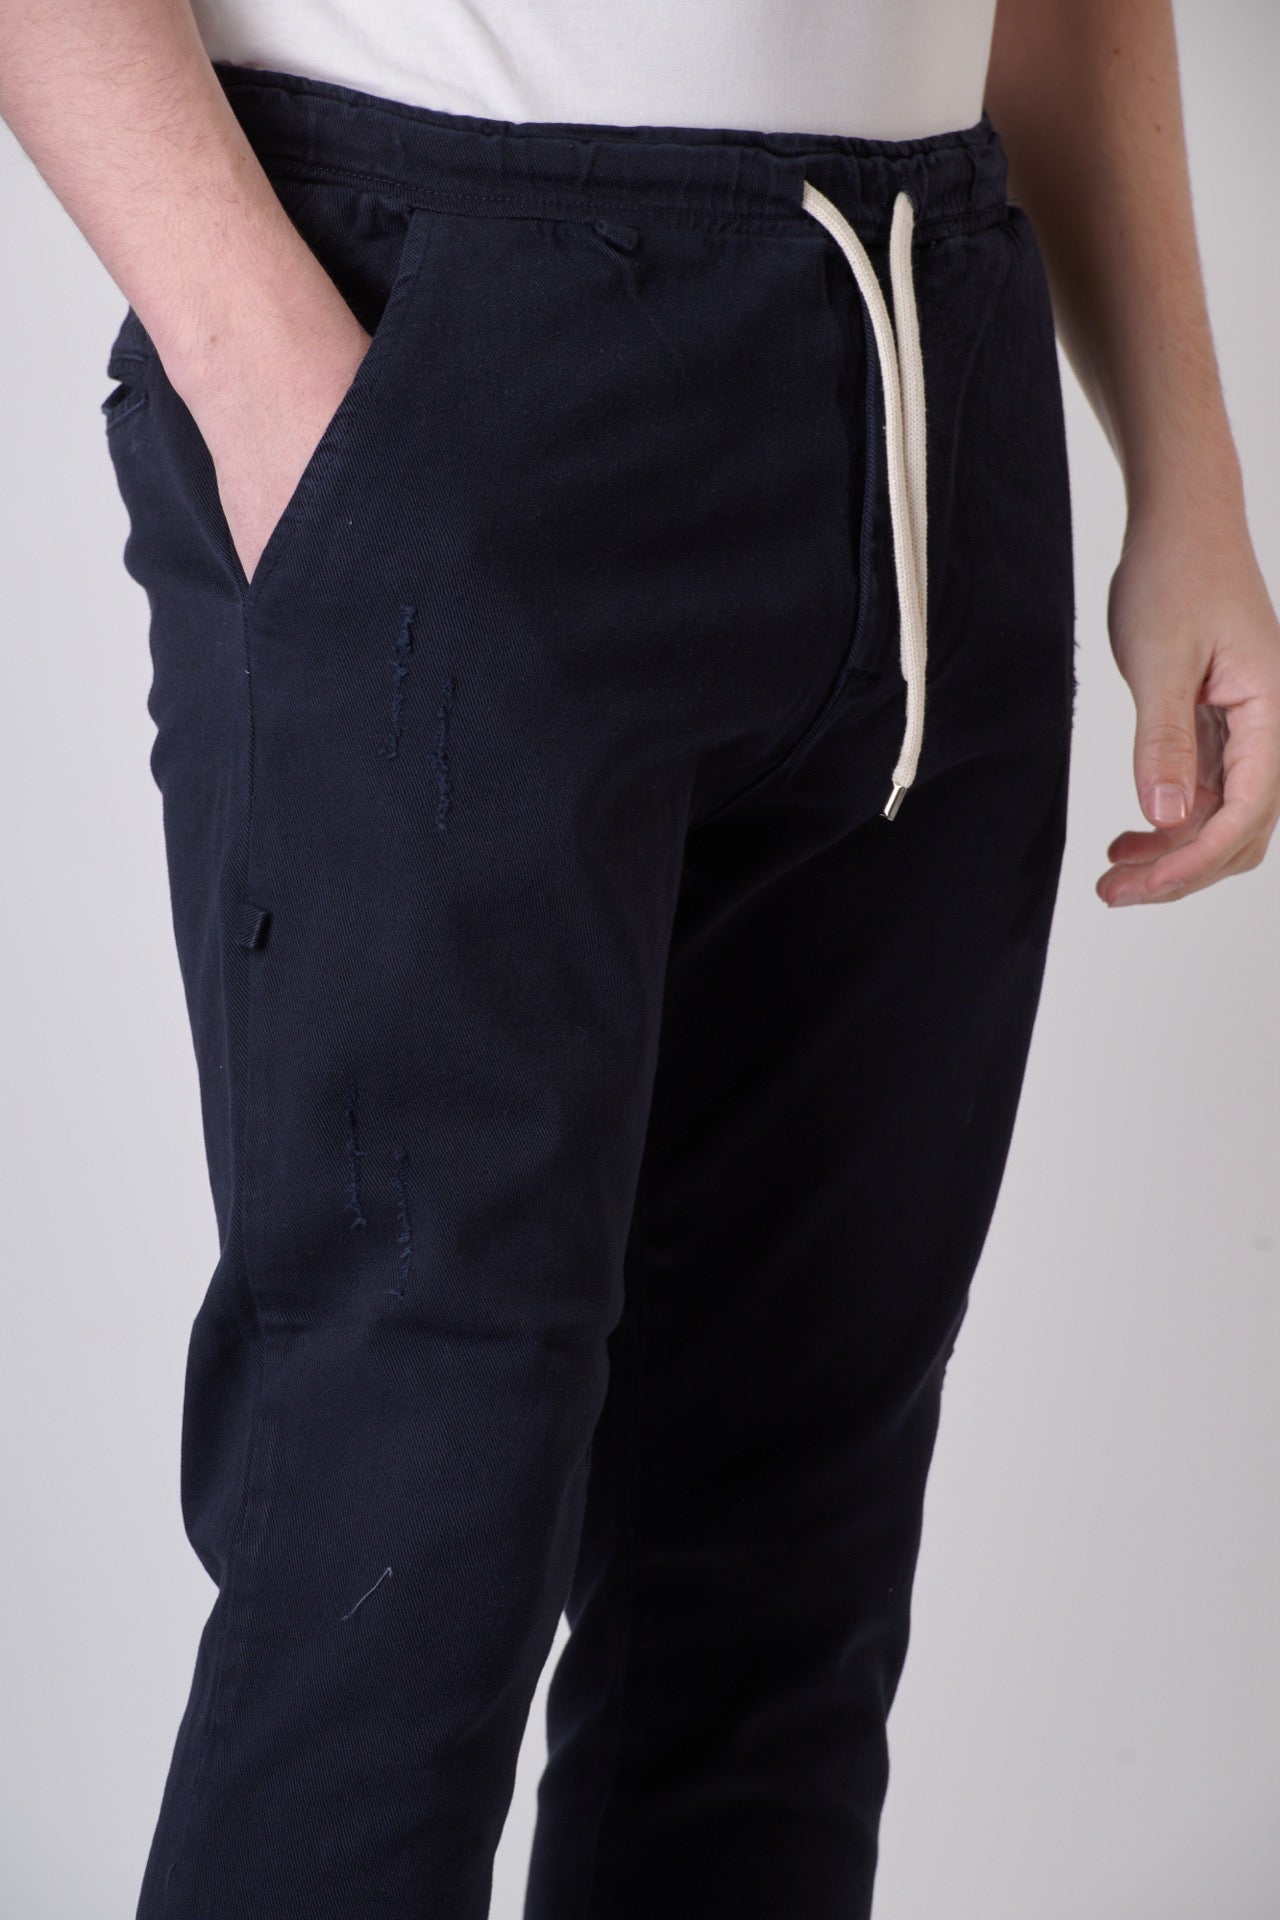 ALICANTE - Pantalone Drill Blu con elastico